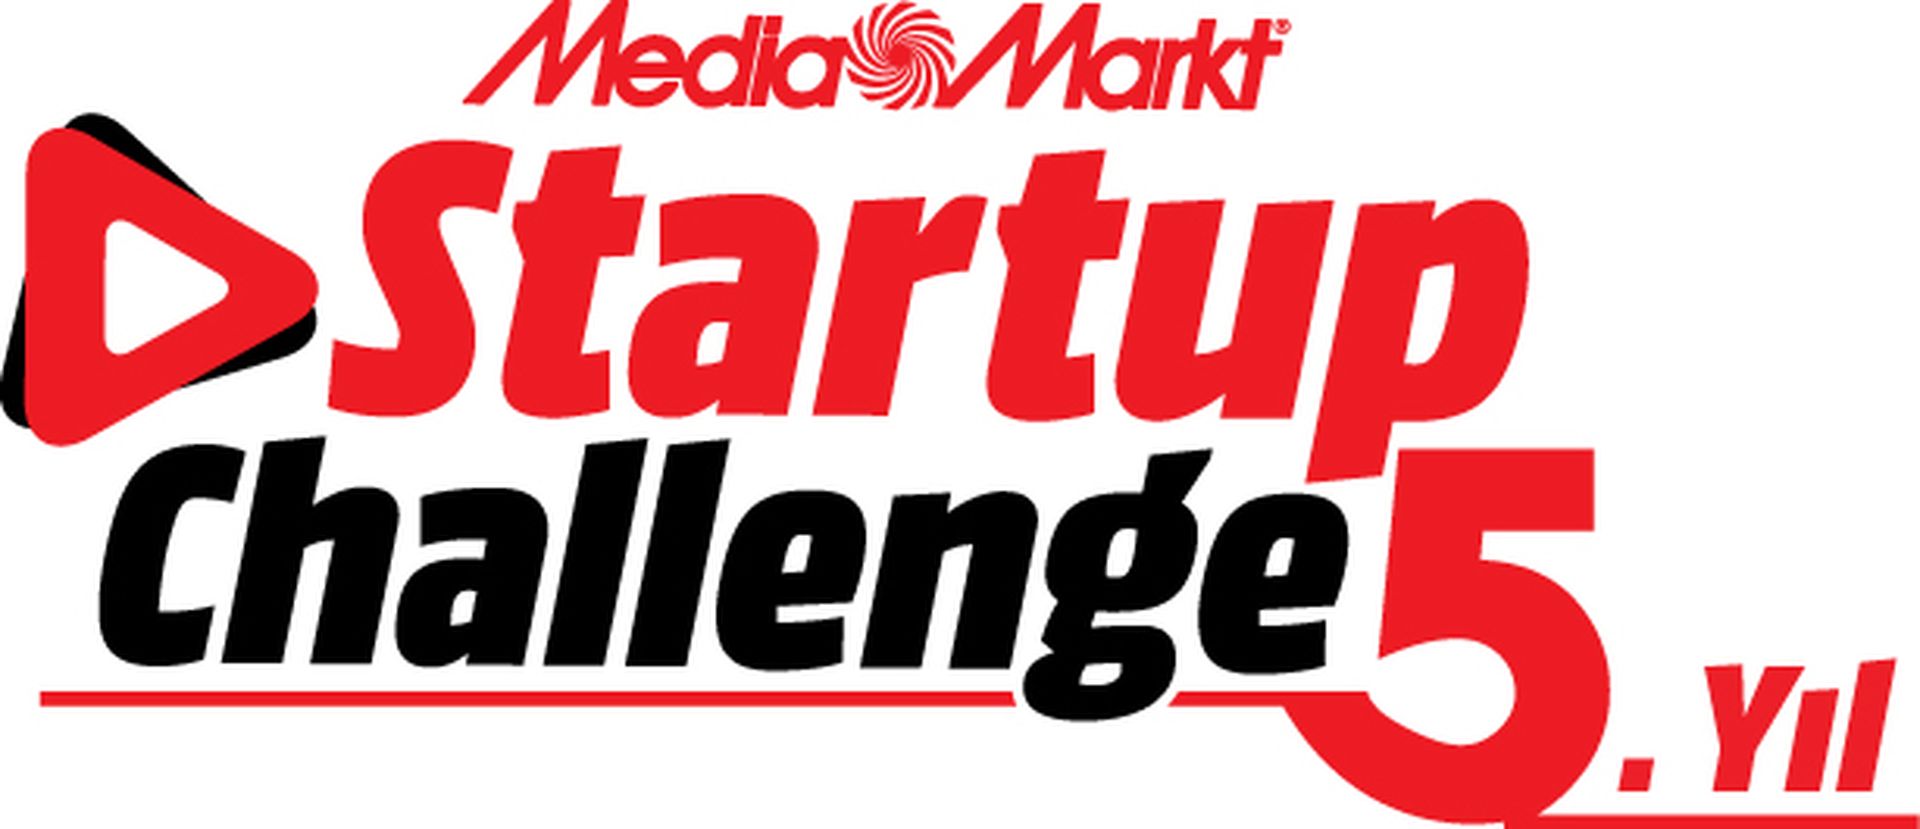 MediaMarkt Startup Challenge nedir, nasıl başvurulur?